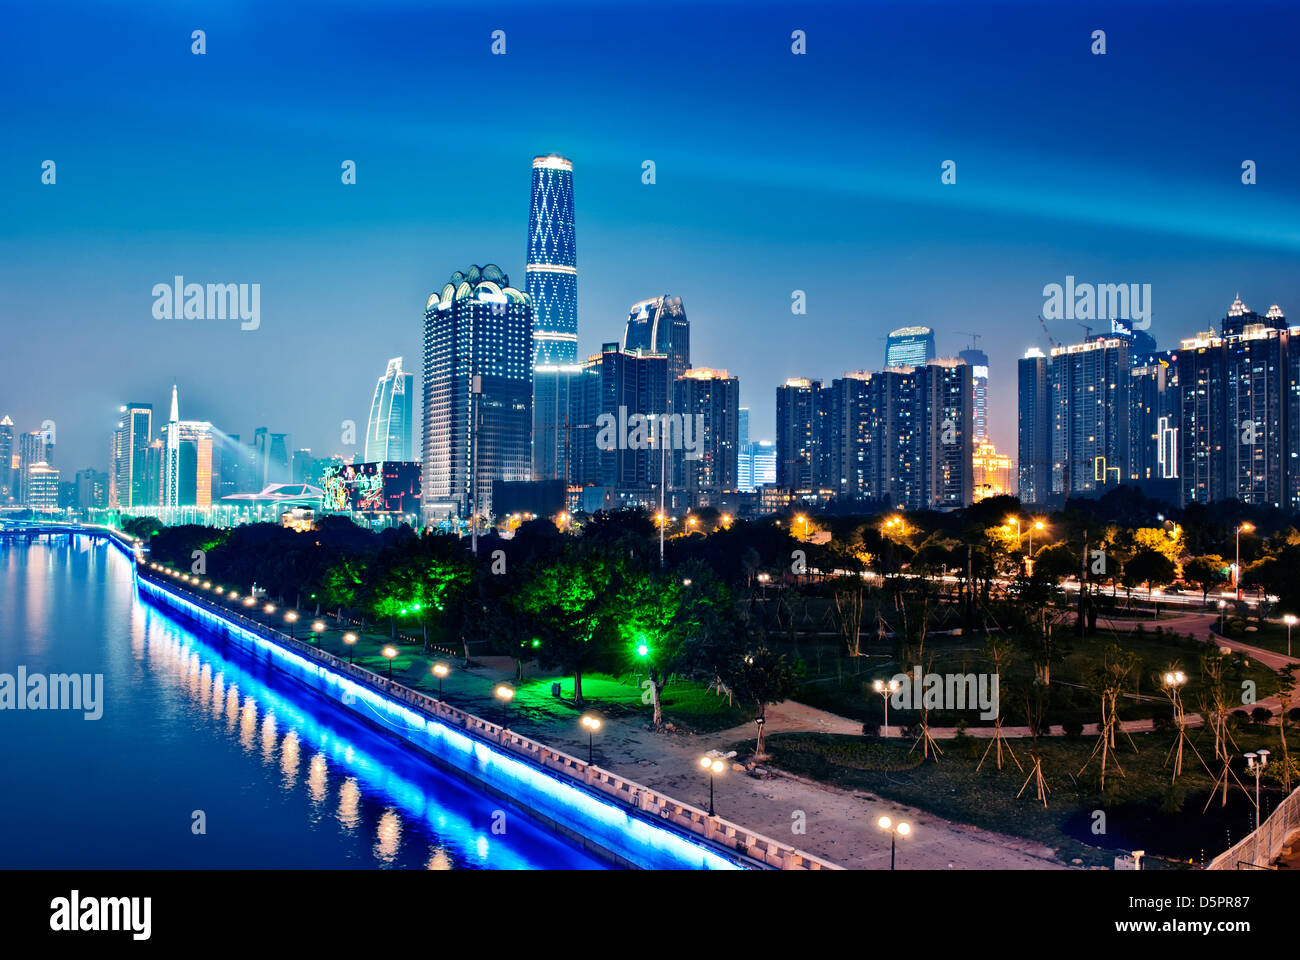 La ville hôte des Jeux asiatiques 2010 à Guangzhou, Chine's night Banque D'Images